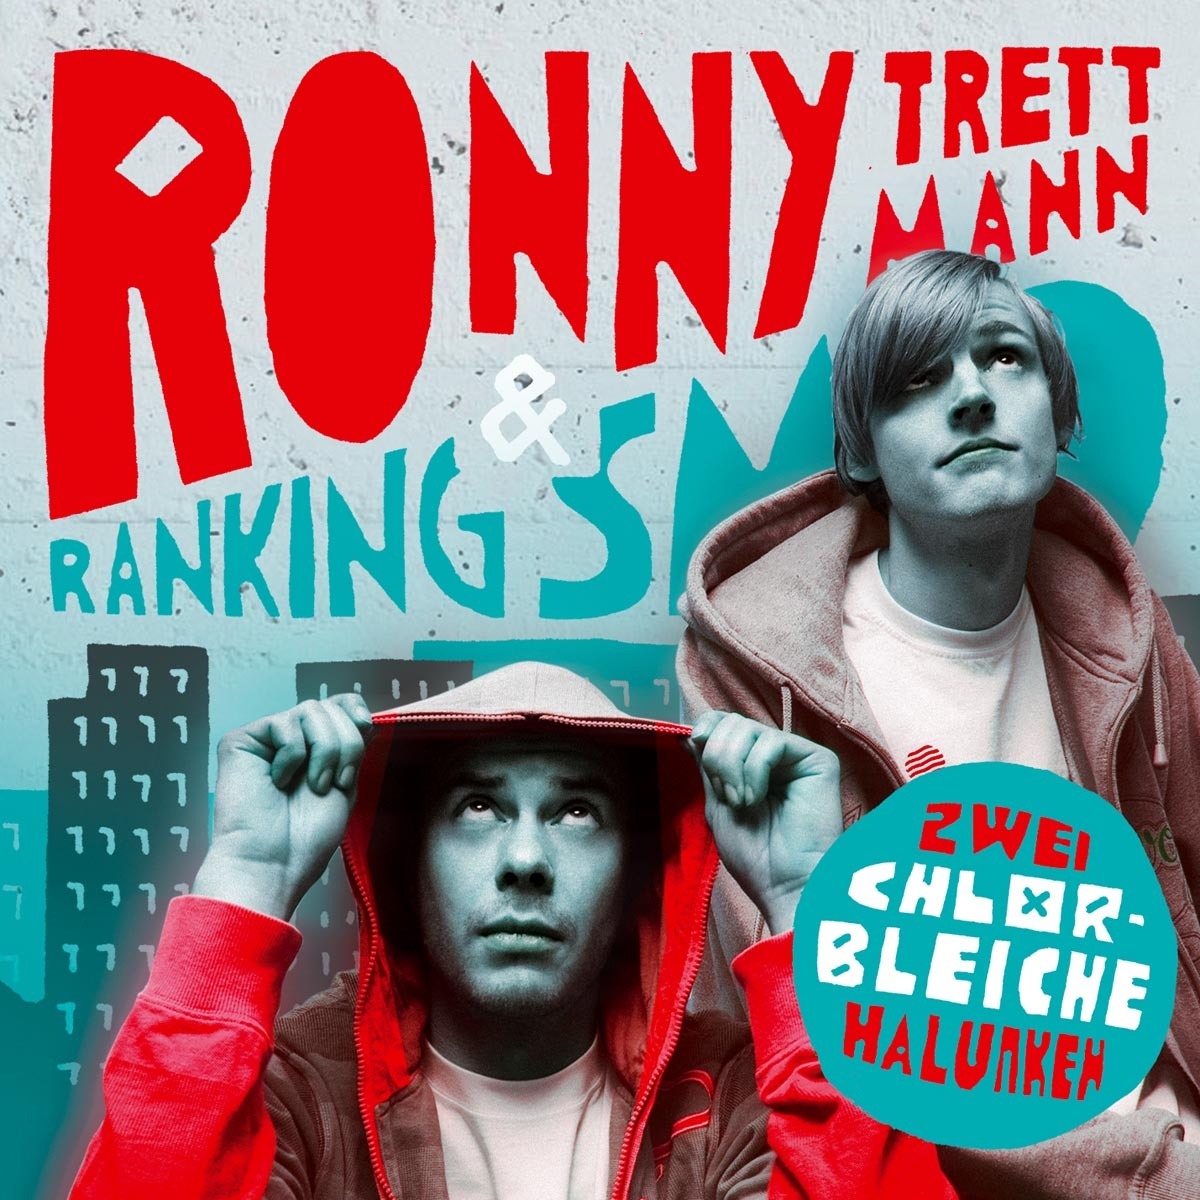 Zwei Chlorbleiche Halunken - Ronny Trettmann  Ranking Smo. (CD)